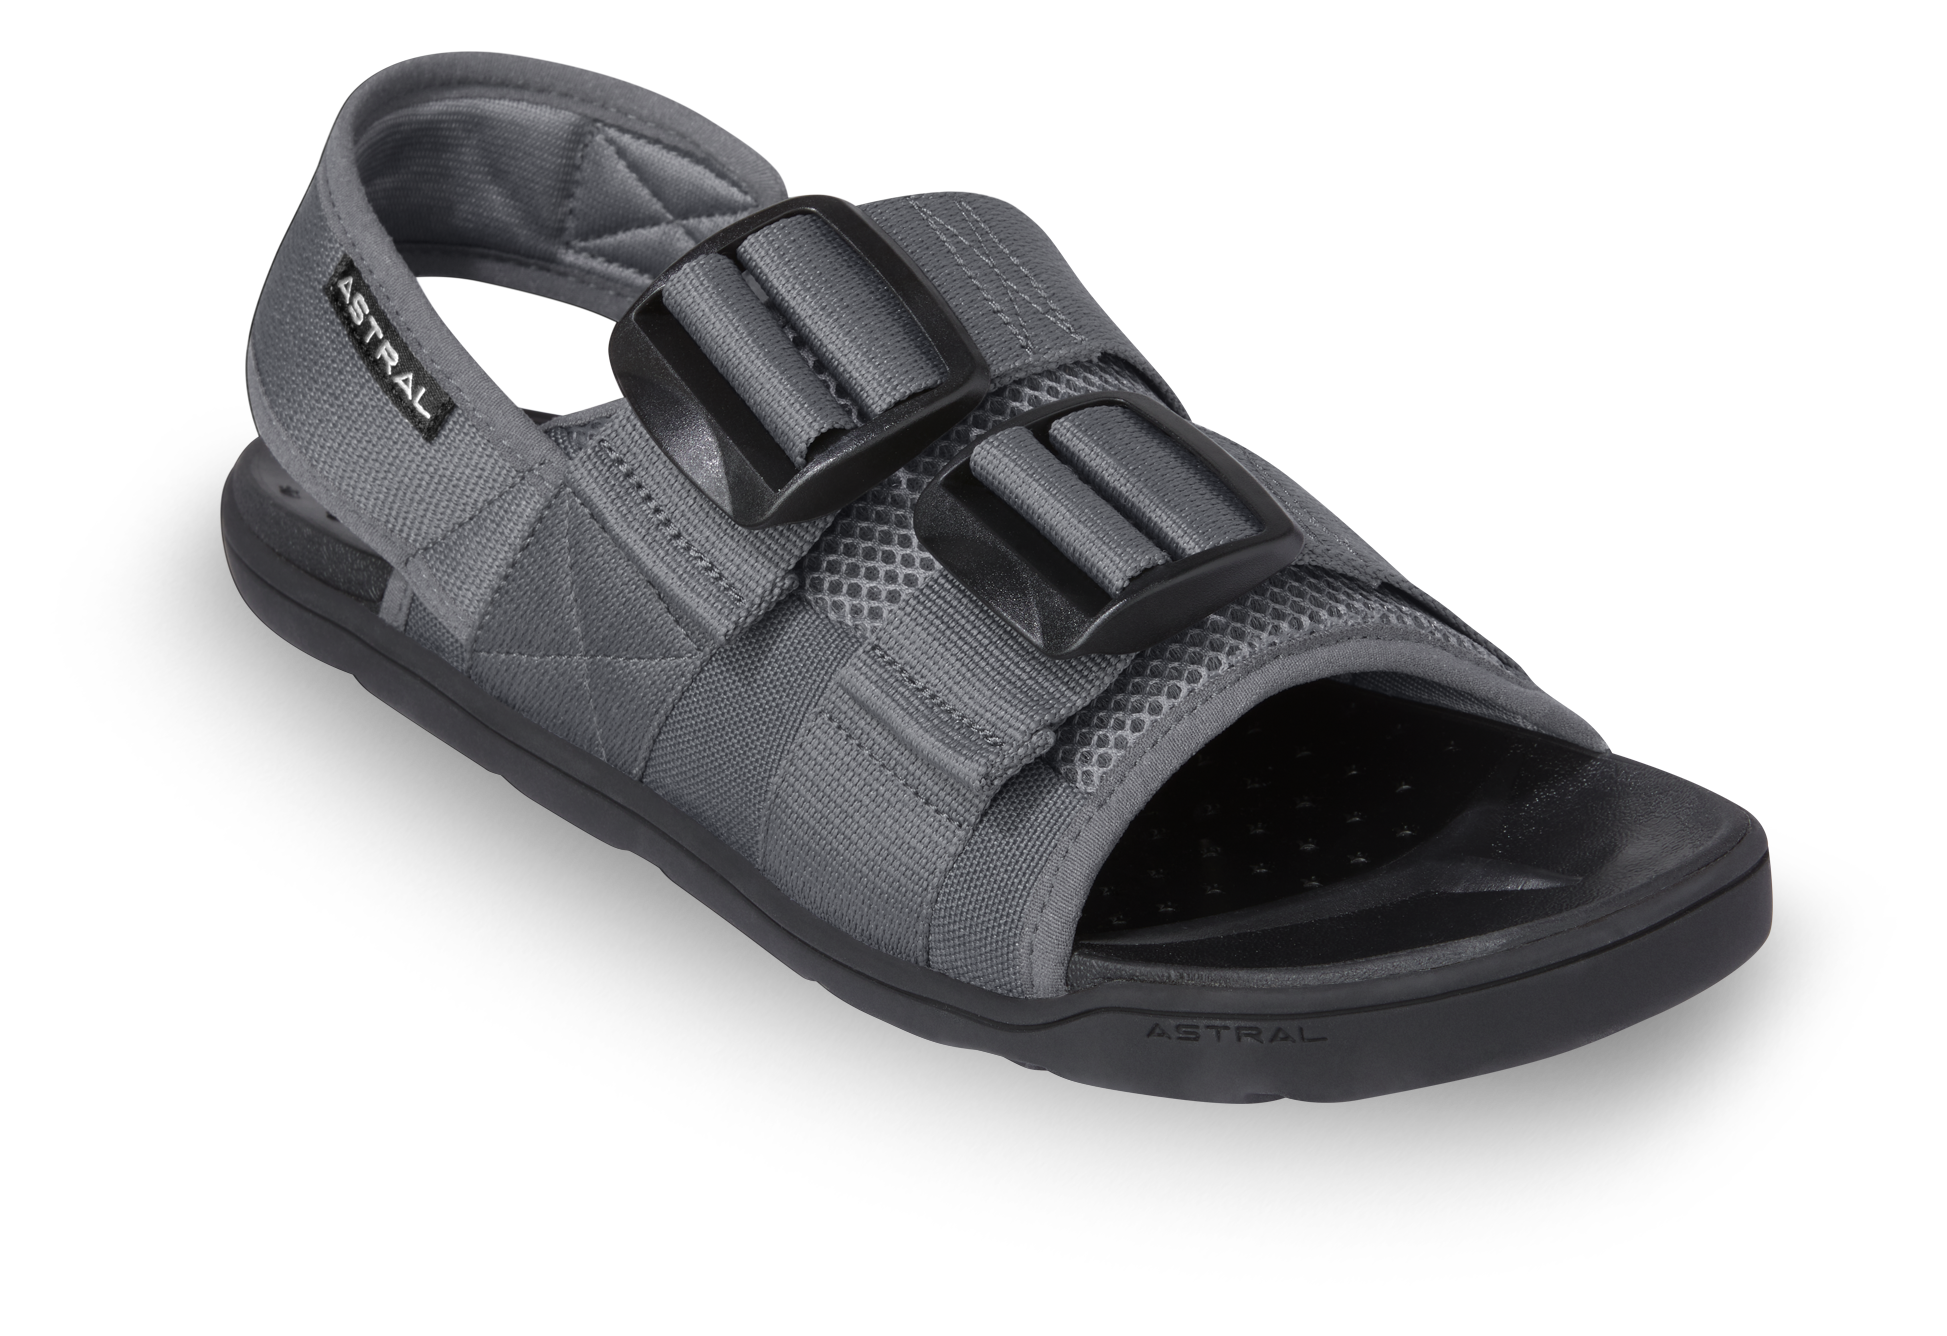 Astral PFD Adjustable Sandals for Men | Bass Pro Shops